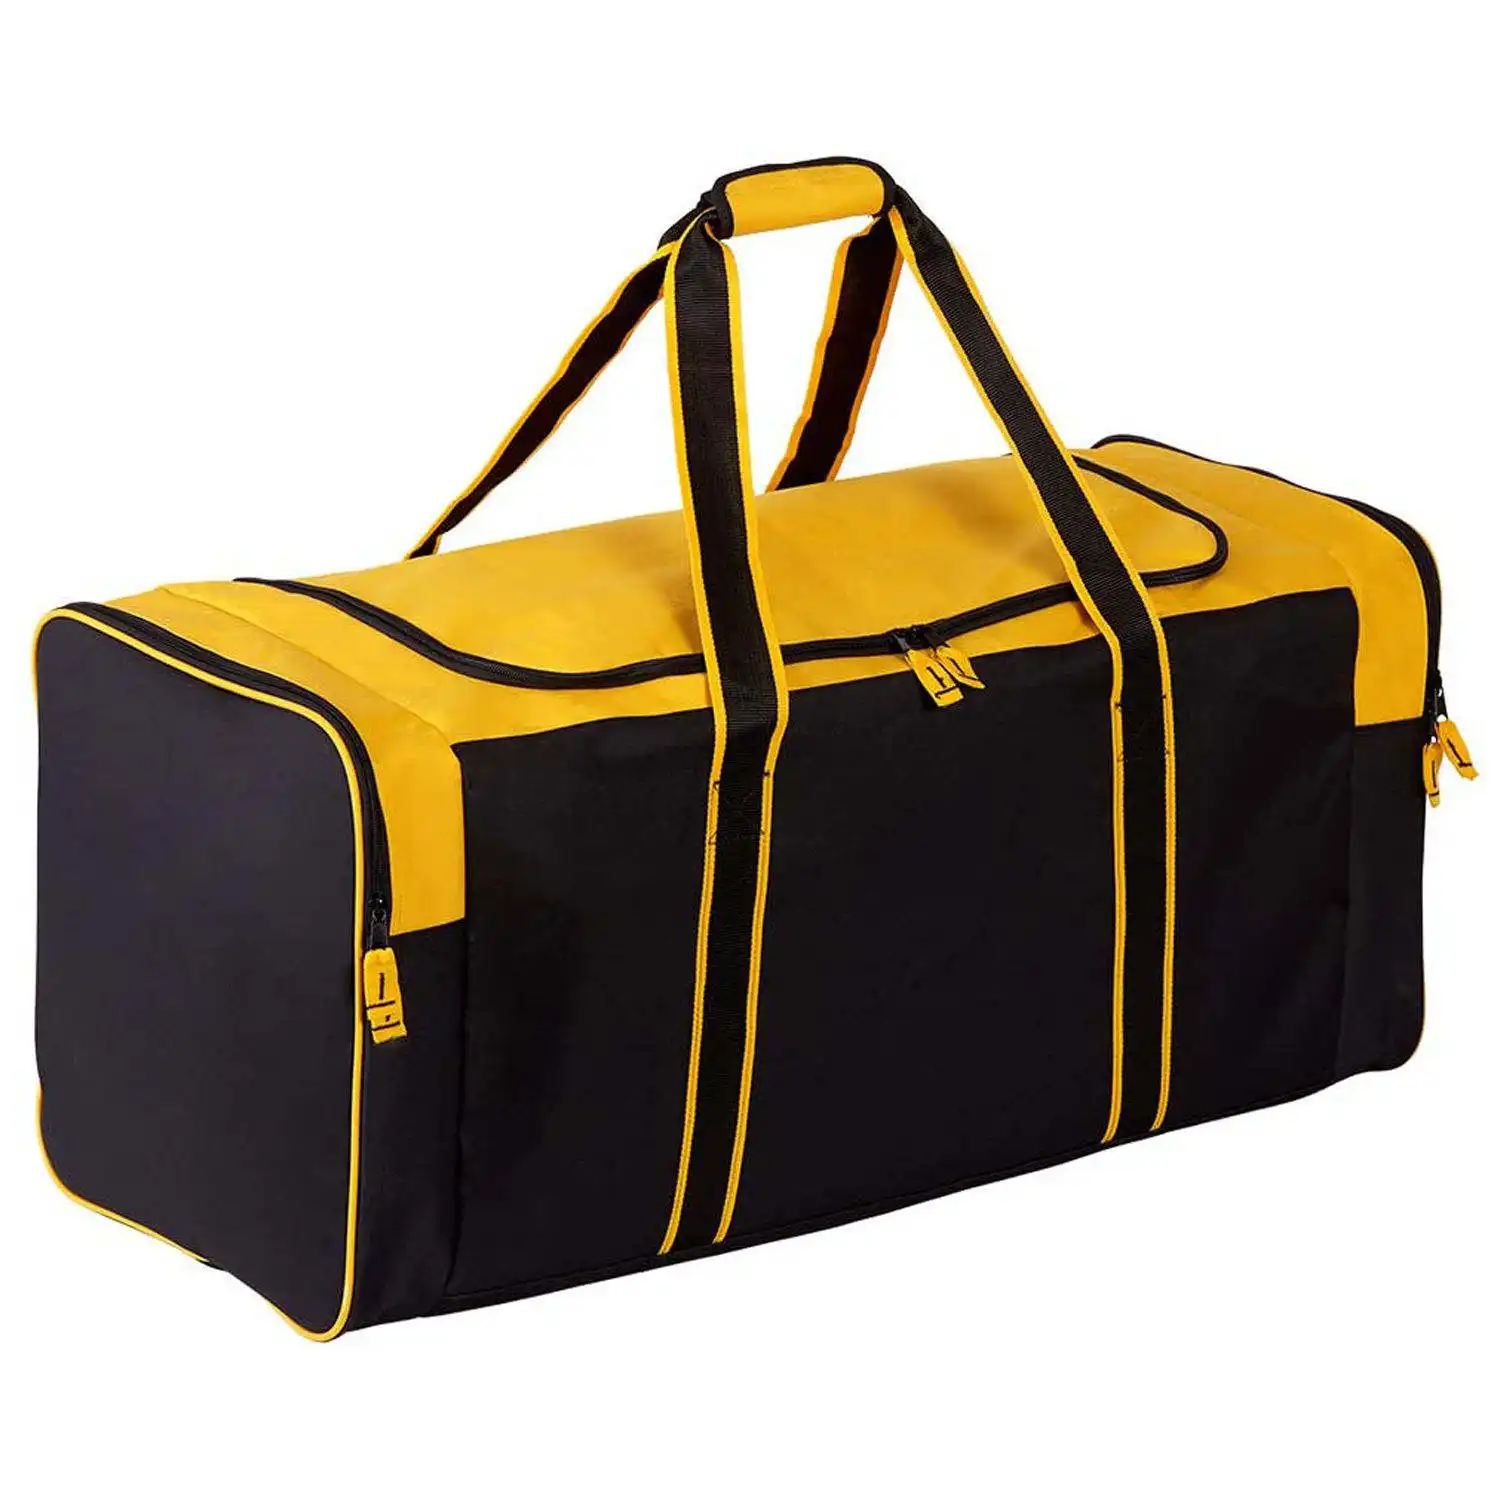 Özel Logo Fitness spor spor çanta büyük kapasiteli ıslak ve kuru seyahat Tote çanta yüzme silindir çanta sırt çantası